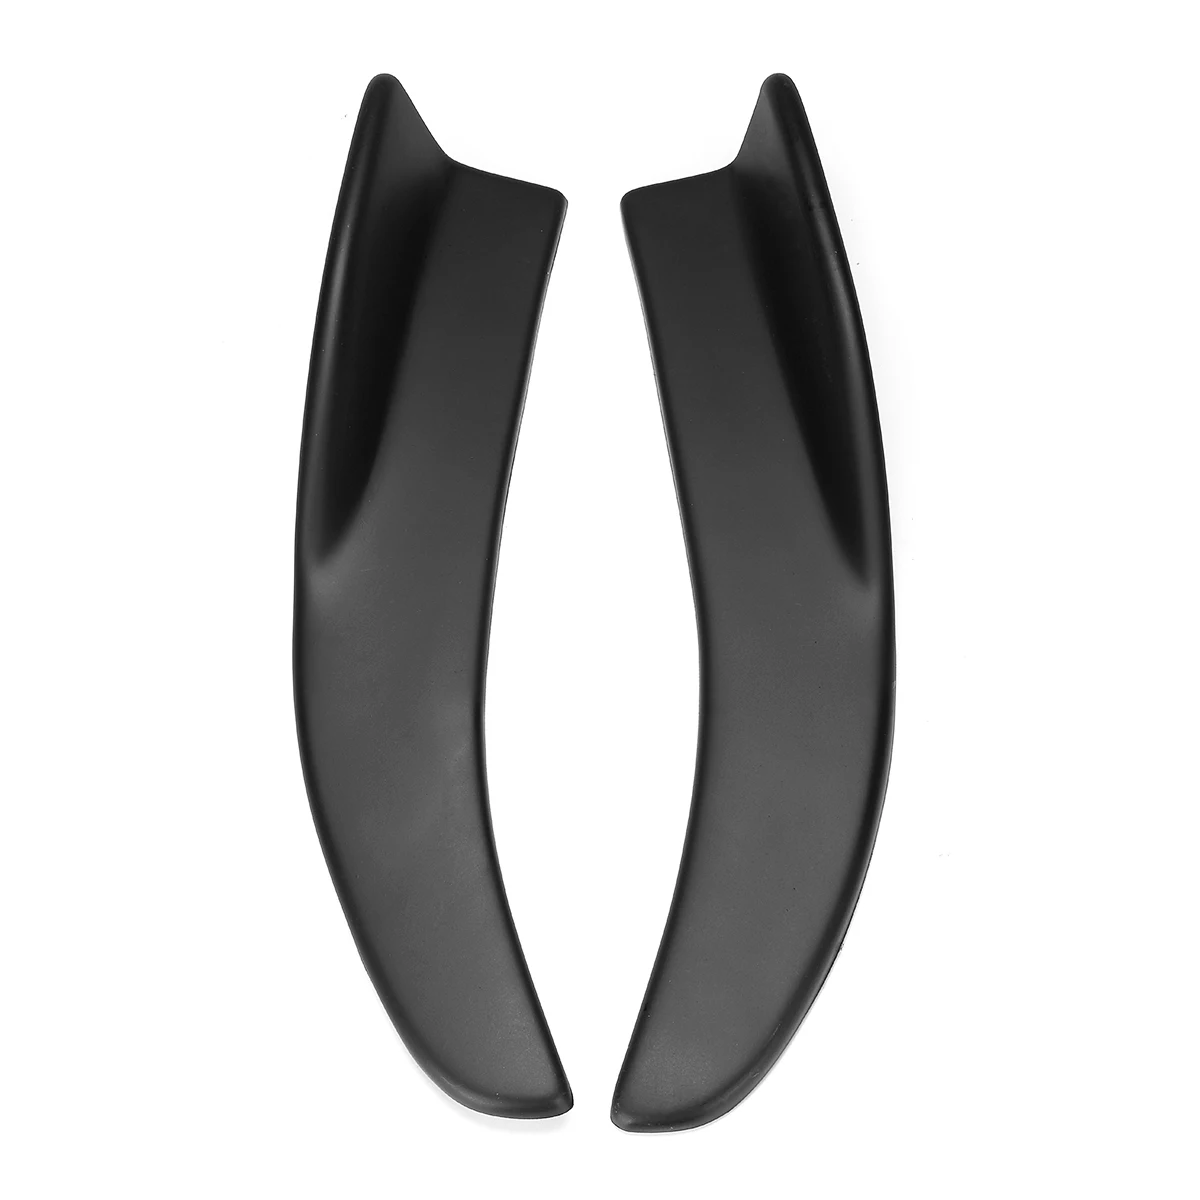 2x Универсальный Автомобильный задний бампер для губ разветвитель крыльев боковая юбка расширения V7 стиль Угловые разветвители диффузор декоративная защита